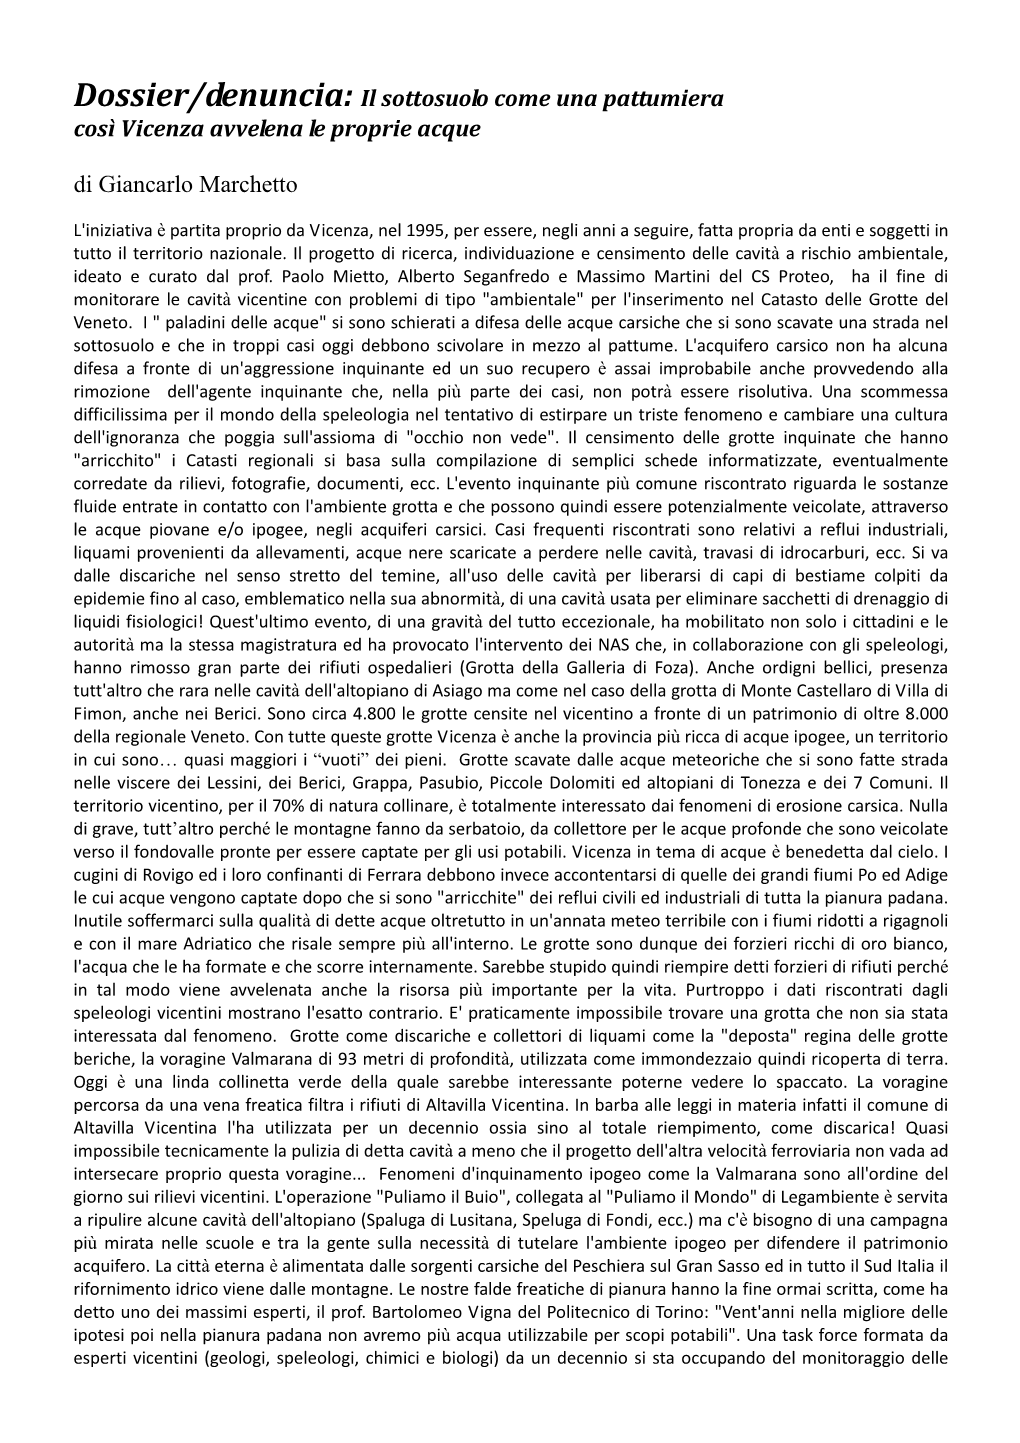 Dossier Denuncia Provincia Di Vicenza Sottosuolo Come Discarica 2013